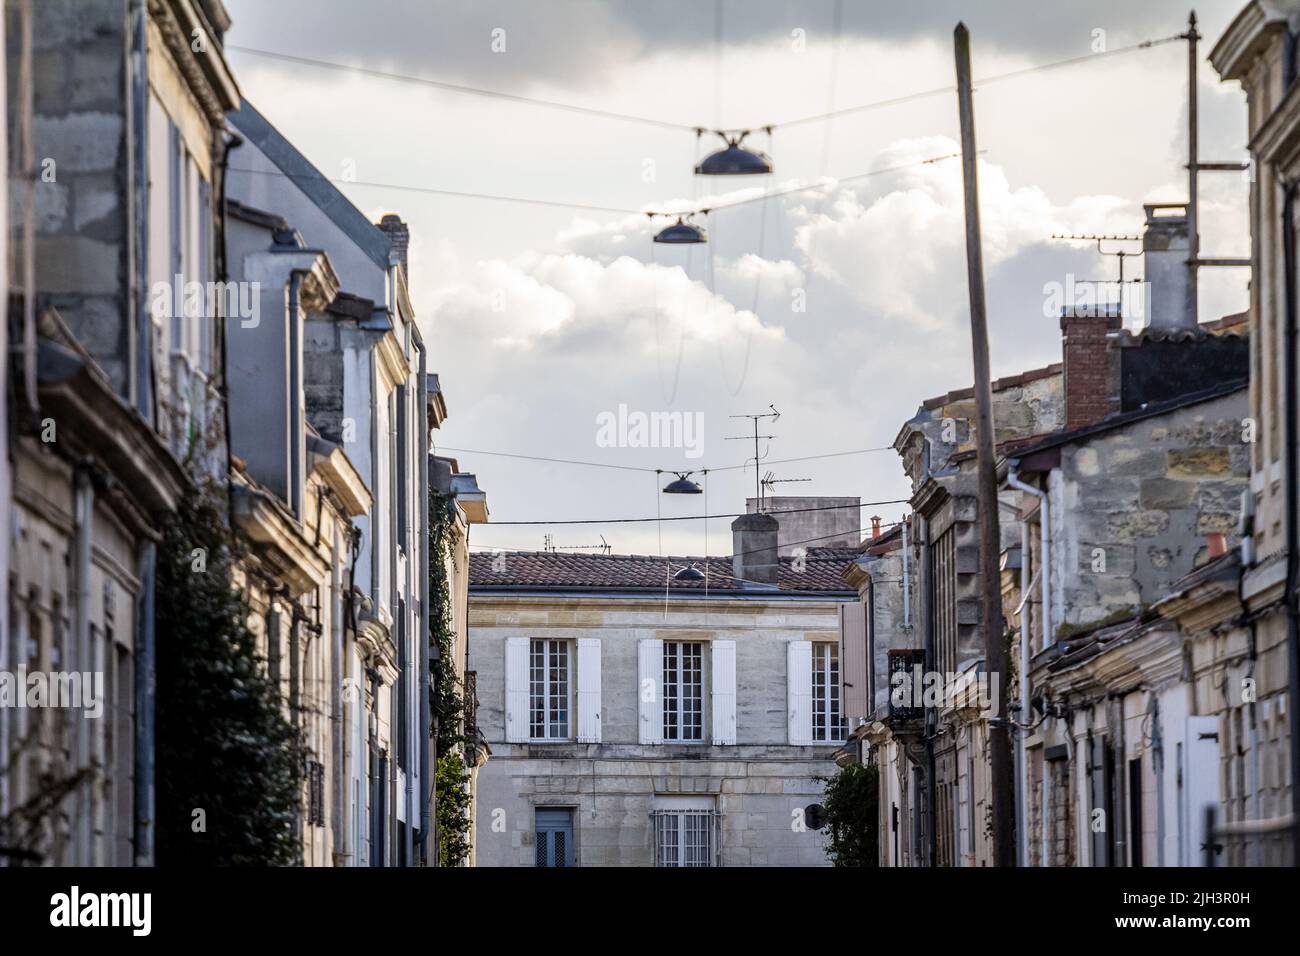 Bild von einem typischen Gebäude des Stadtzentrums von Bordeaux, Frankreich Serbien, mit geschlossenen Jalousien auf einem Gebäude für Wohnzwecke. Stockfoto